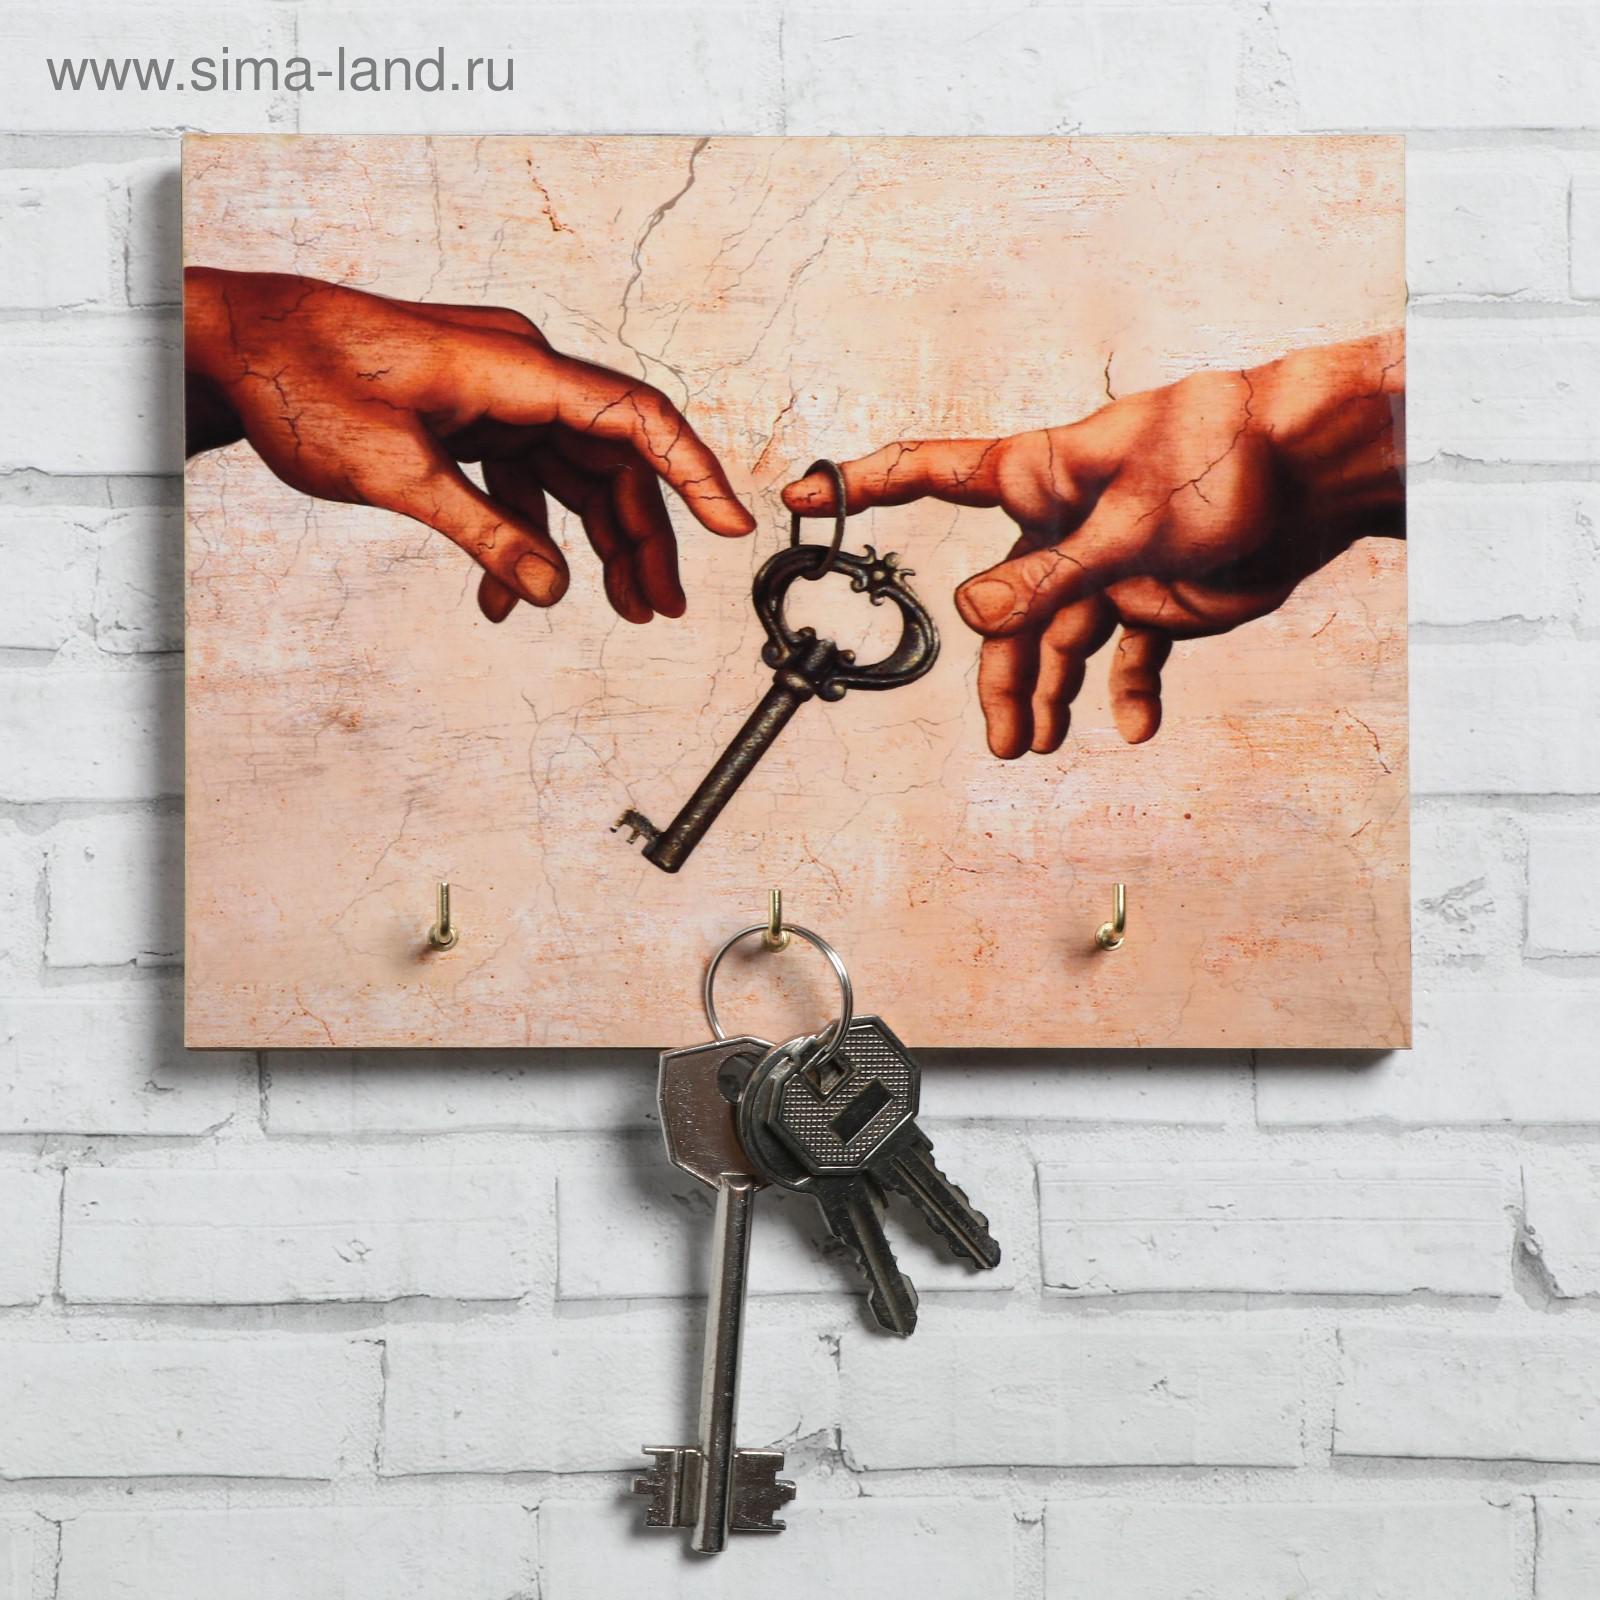 Ключница "Руки" ключ, 12 х 16 см